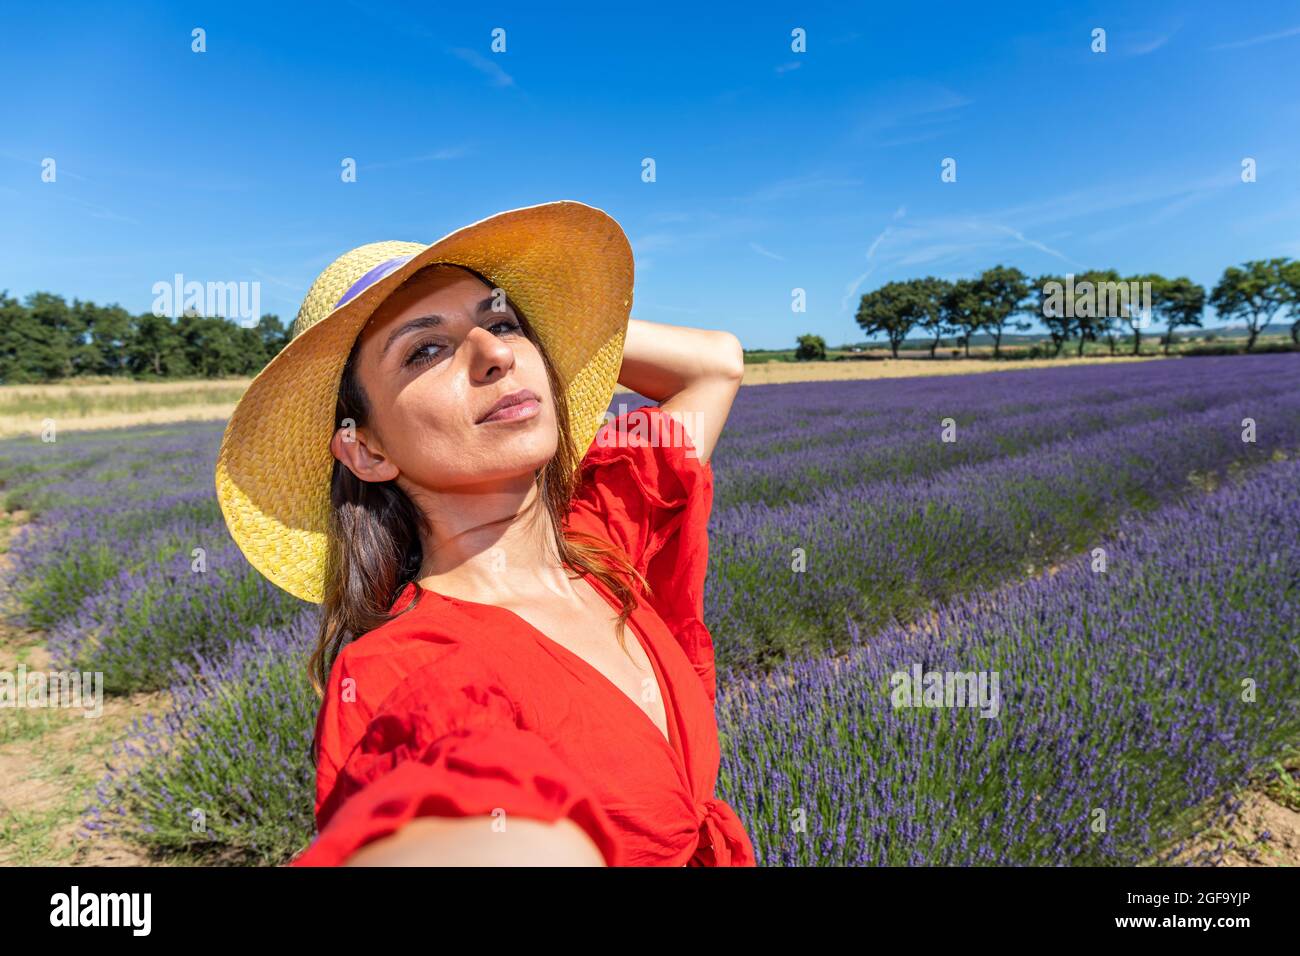 Eine schöne Frau mit Strohhut, die ein Selfie in einem blühenden Lavendelfeld nimmt. Konzept von Glück, Wohlbefinden und Freiheit. Stockfoto